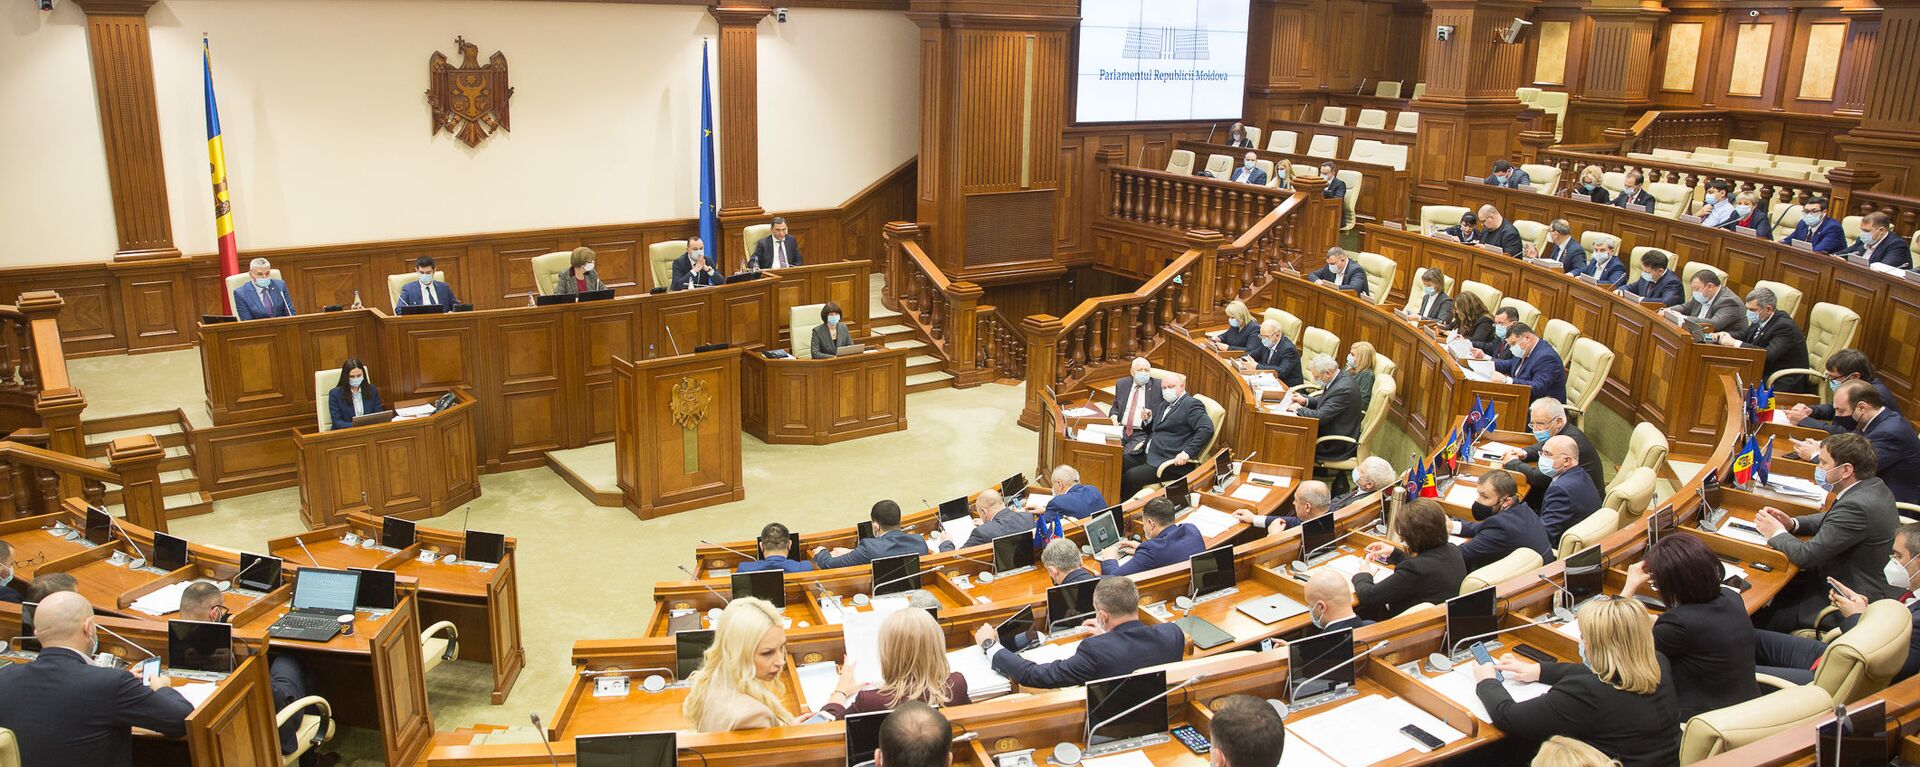 Ședința plenară a Parlamentului, 16 decembrie 2020 - Sputnik Moldova, 1920, 31.03.2021